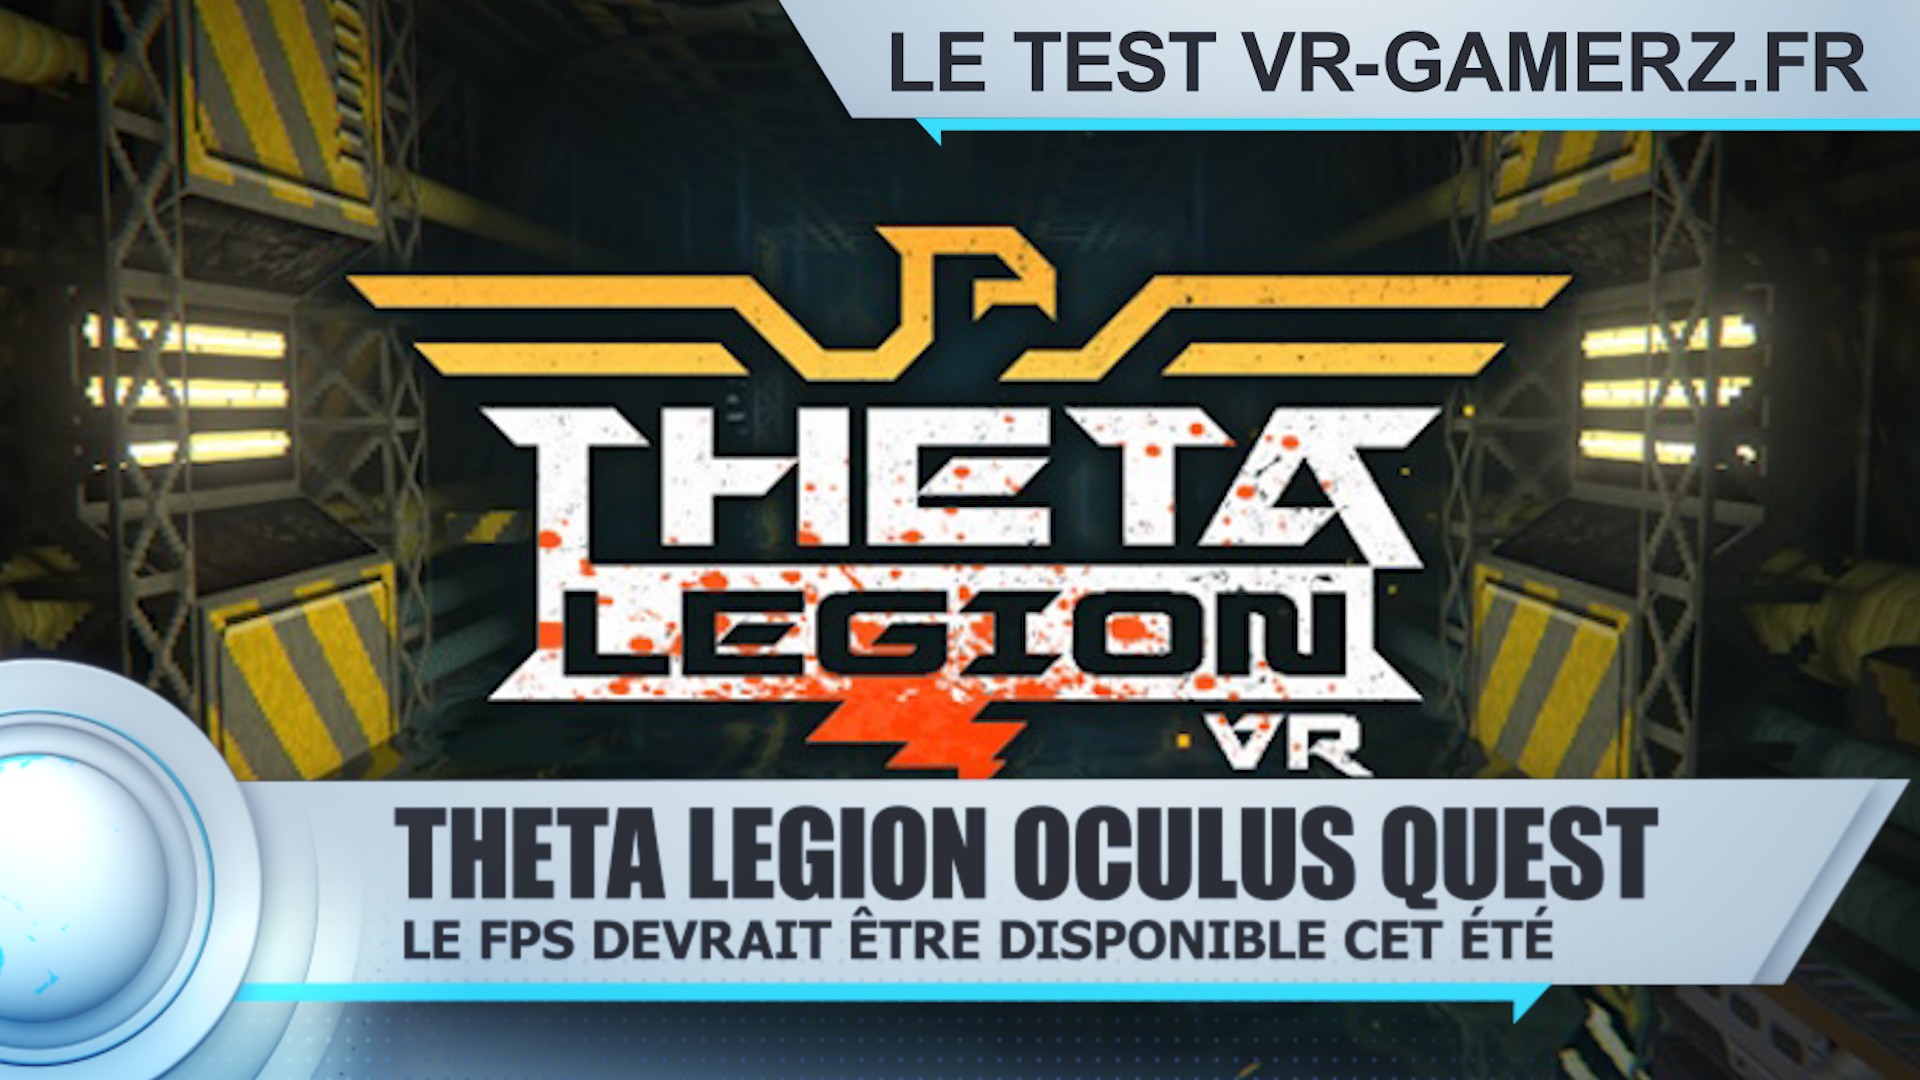 Theta Legion Oculus quest